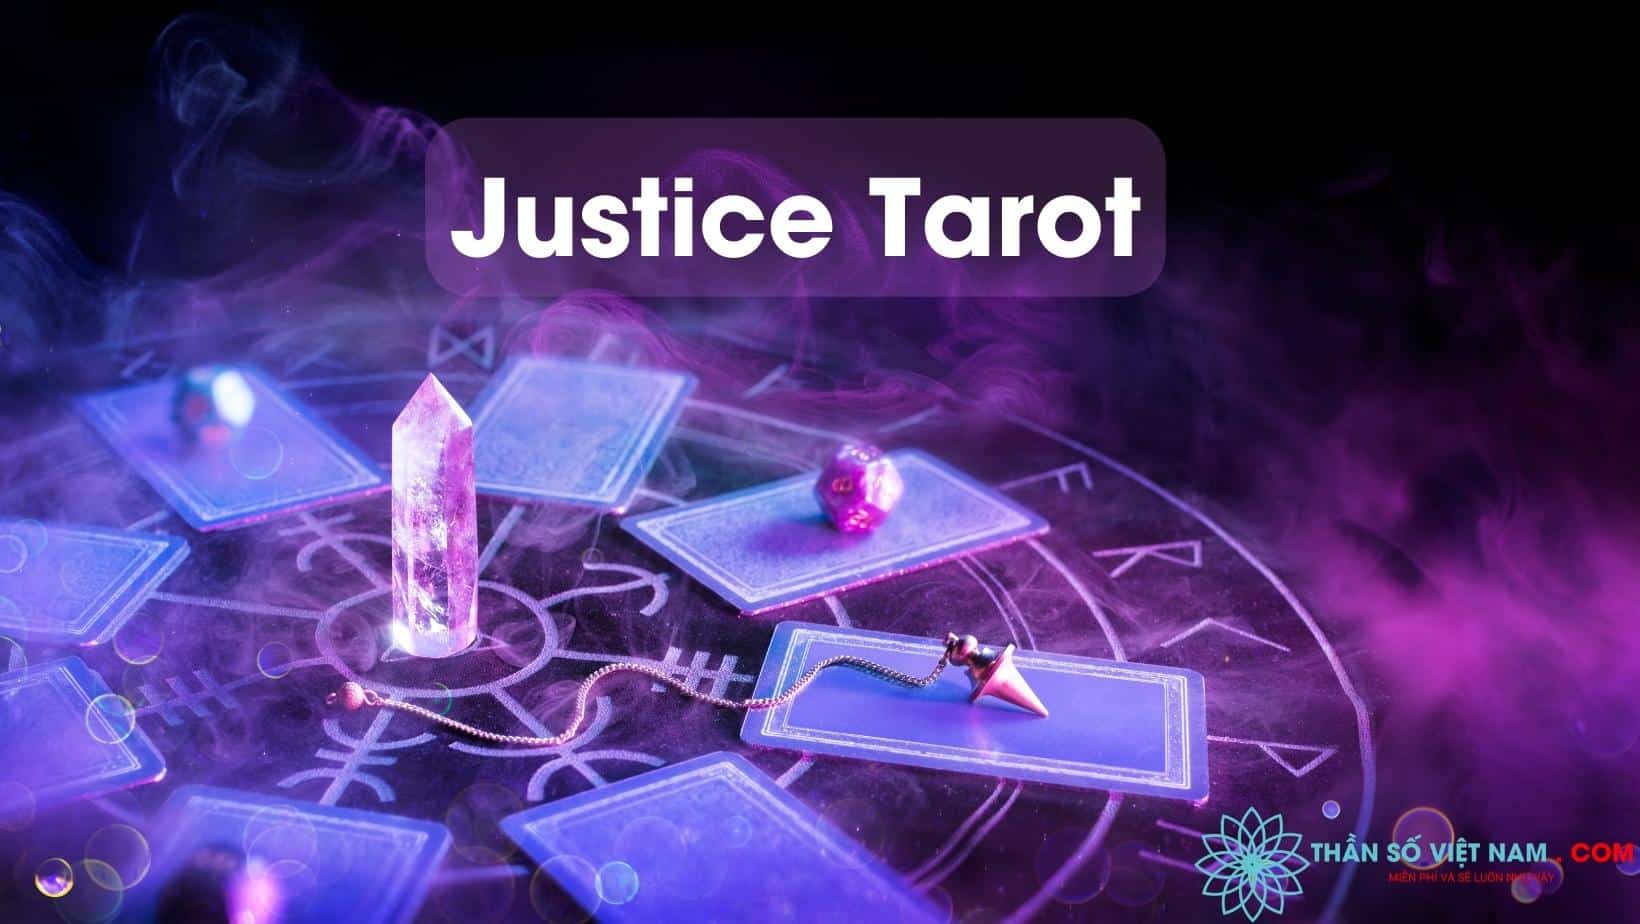 Xem ngay bức ảnh về bộ bài Tarot độc đáo để tìm hiểu về cuộc sống và tương lai của bạn.